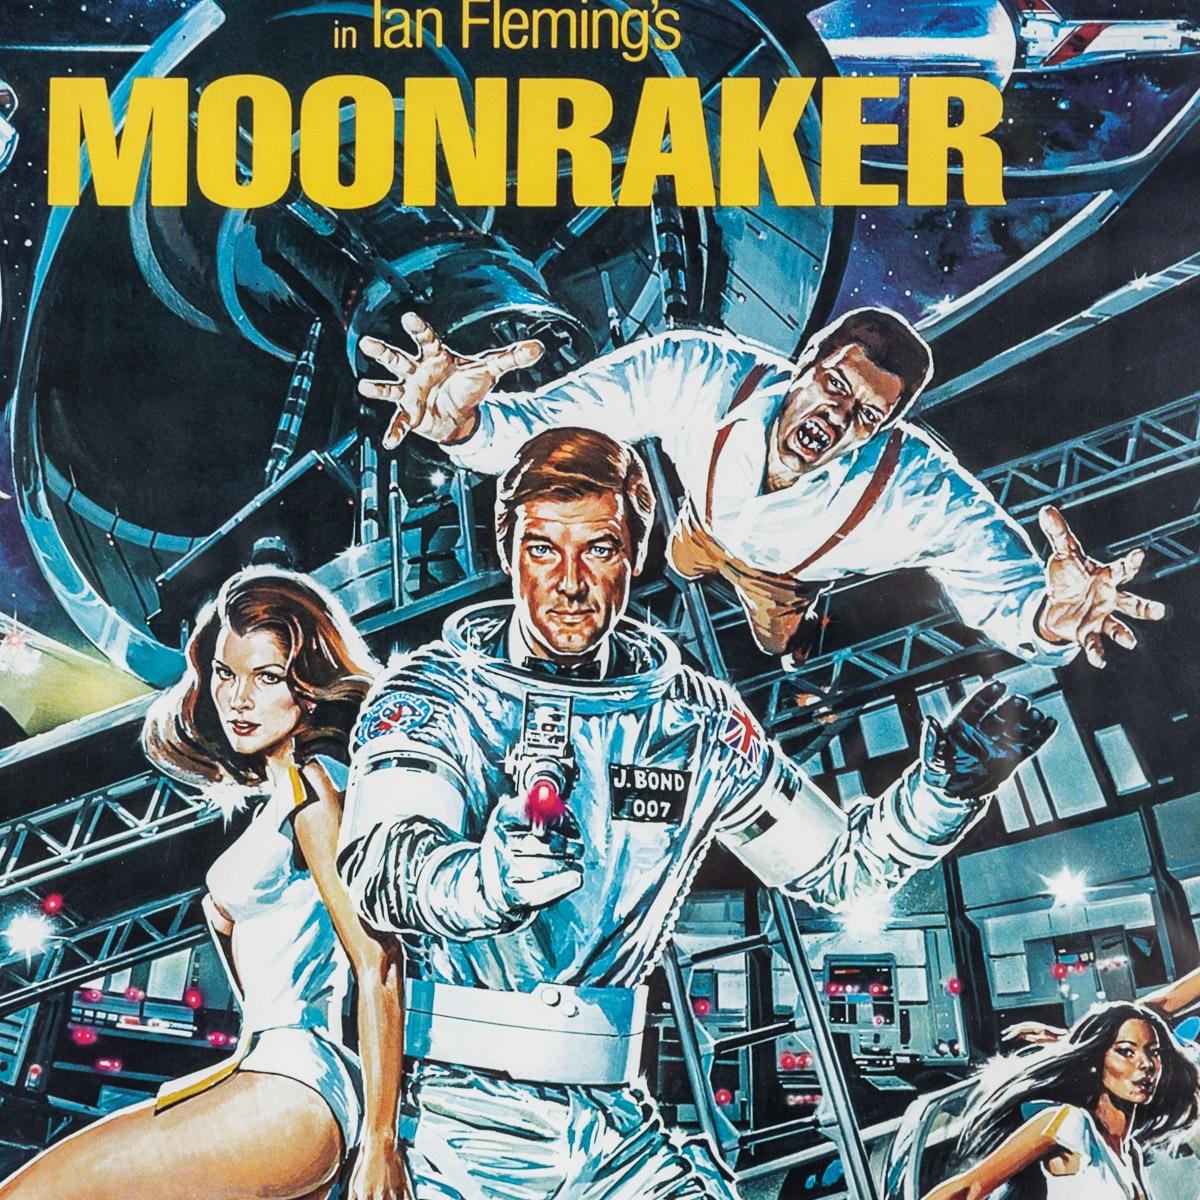 British Original James Bond 007 'Moonraker' Film Poster, Signed by Roger Moore, c.1979 For Sale